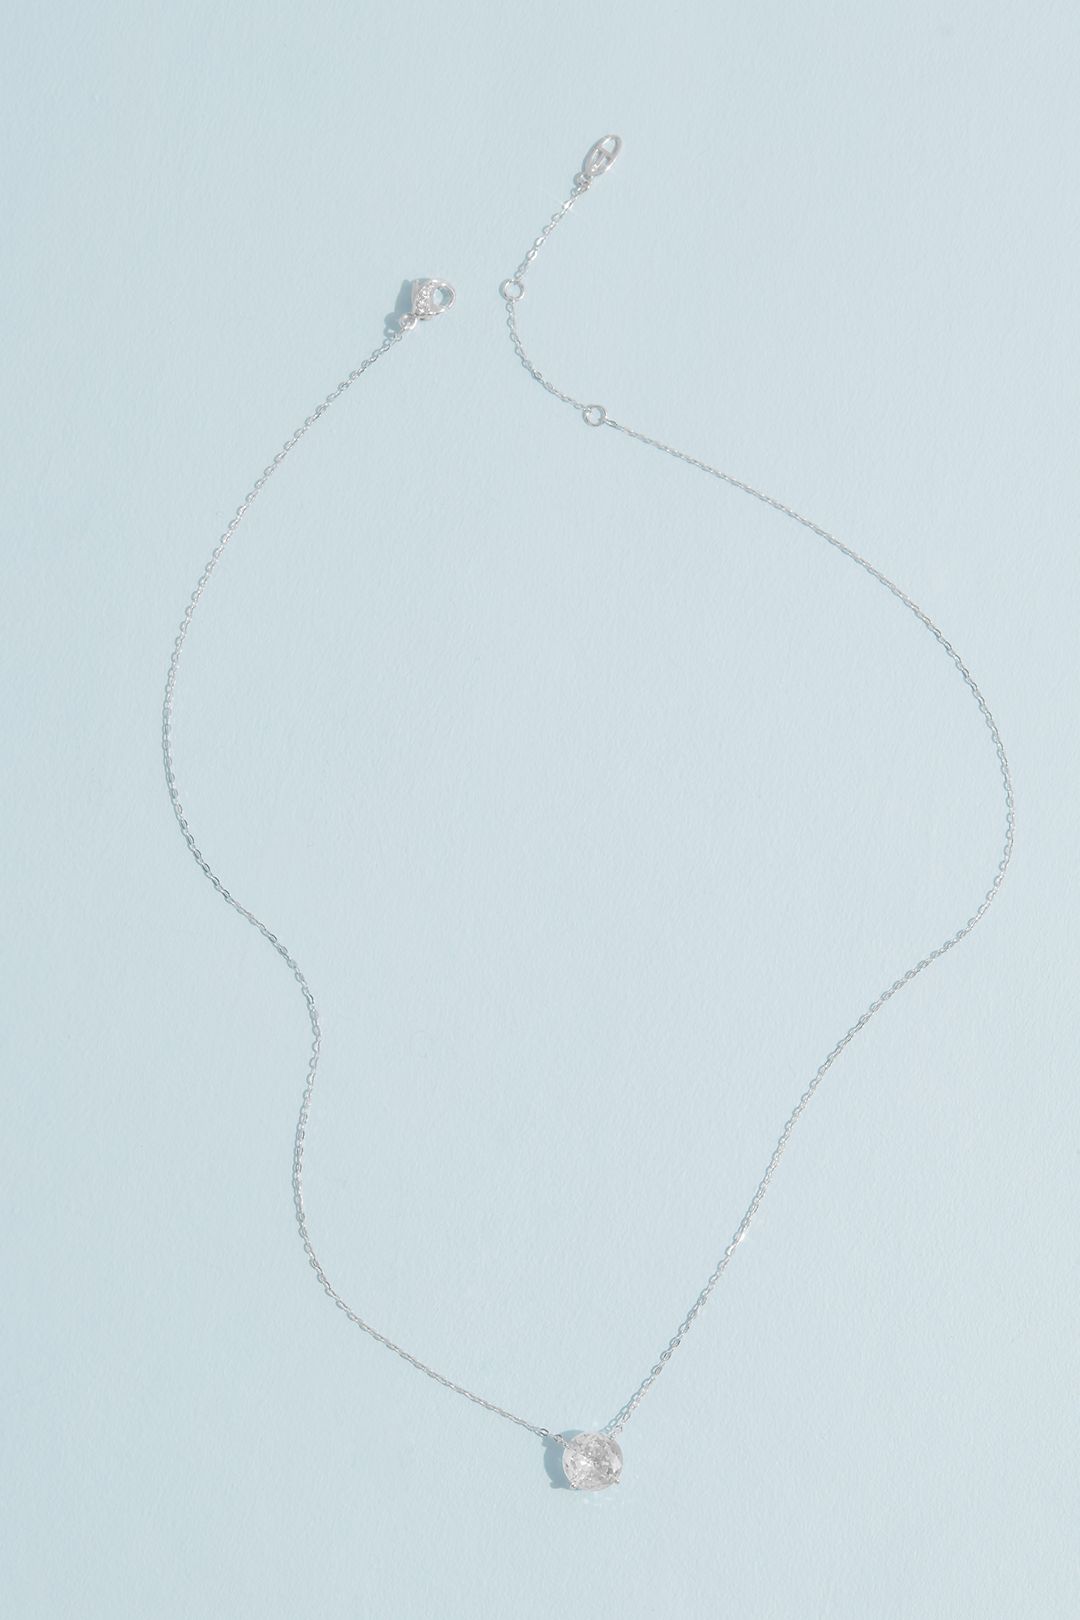 Rhodium 8MM Cubic Zirconia Pendant Necklace Image 3